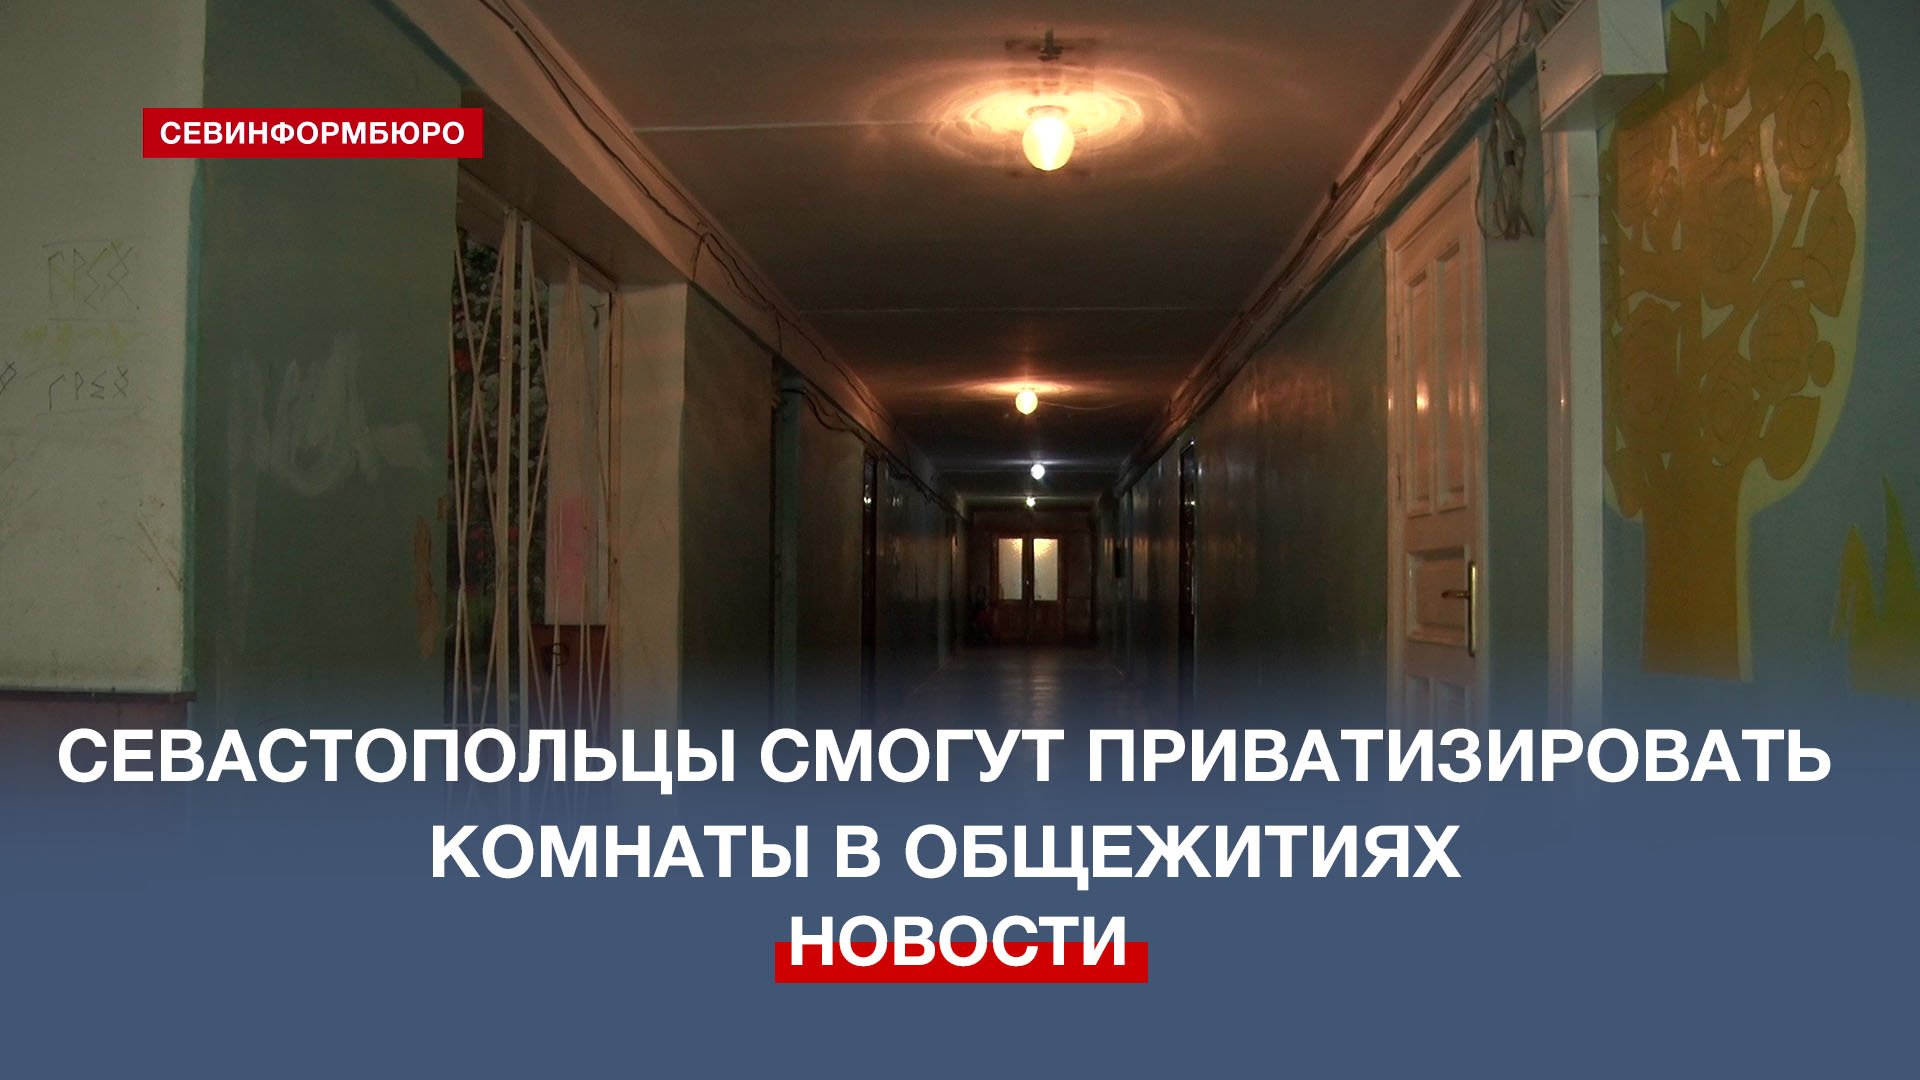 Общежитие на Севастопольской. Общежитие можно приватизировать